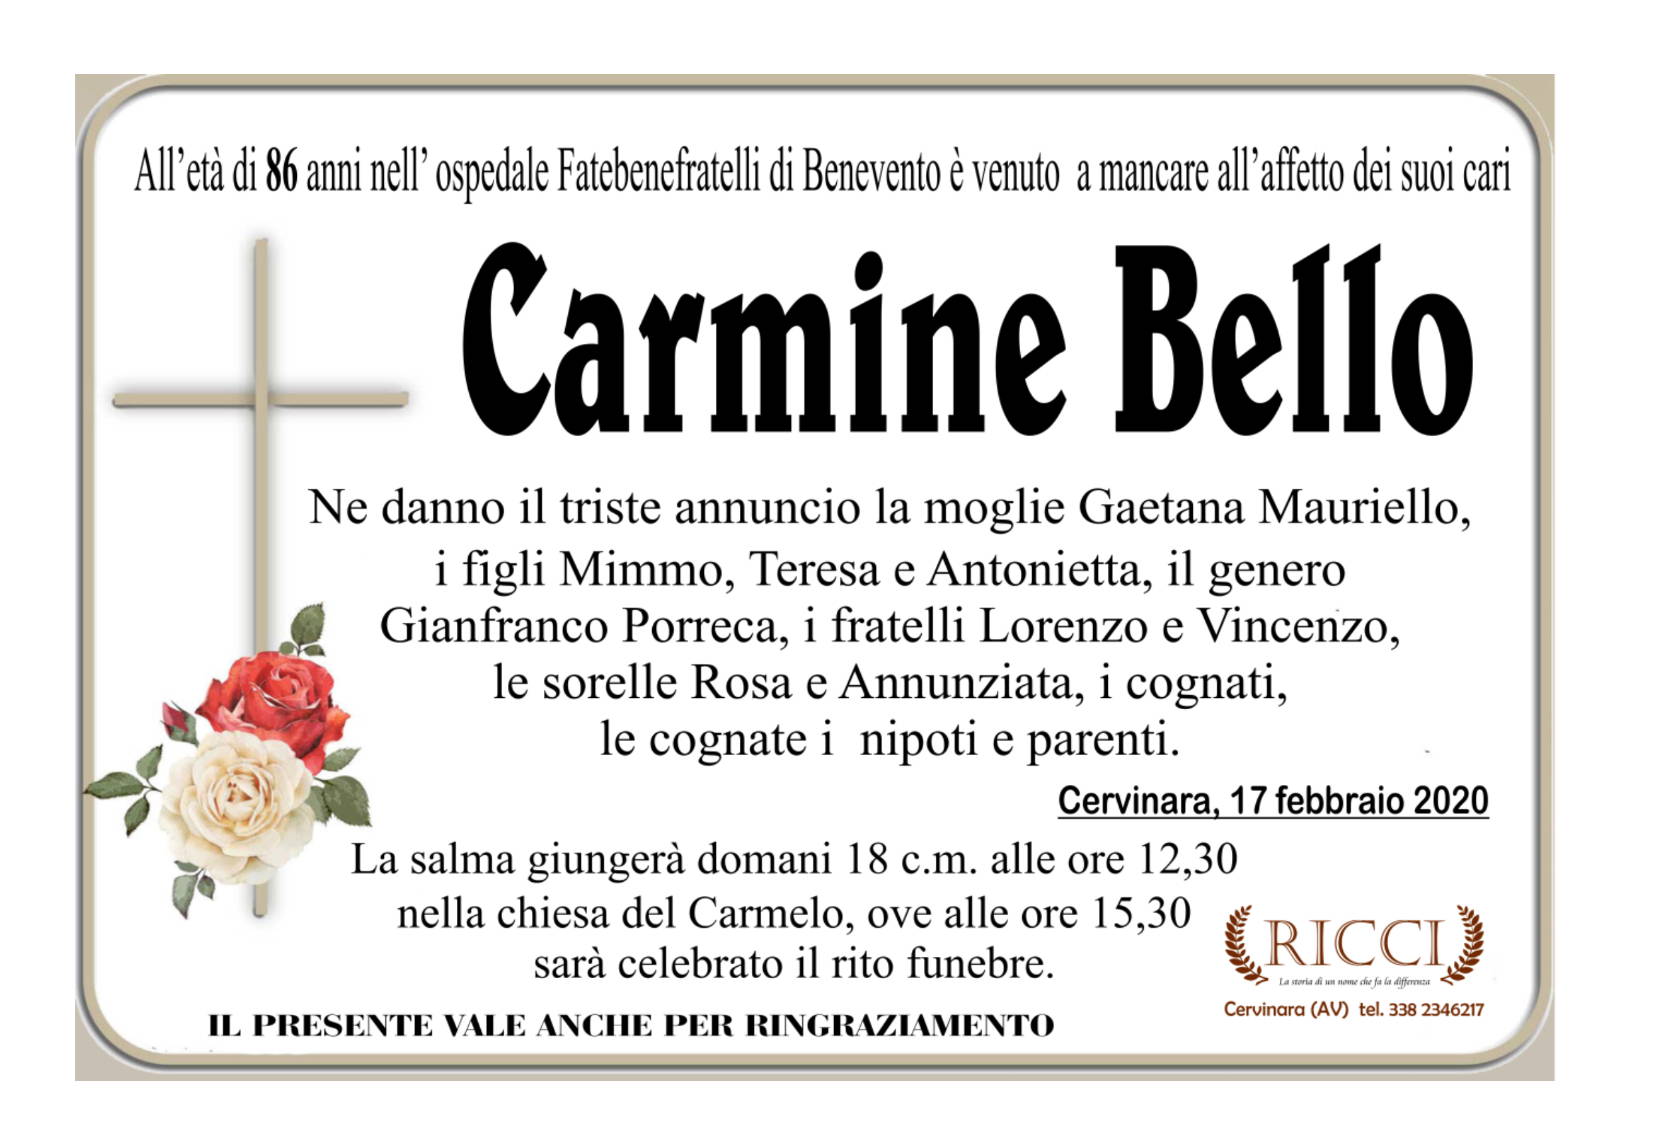 Carmine Bello